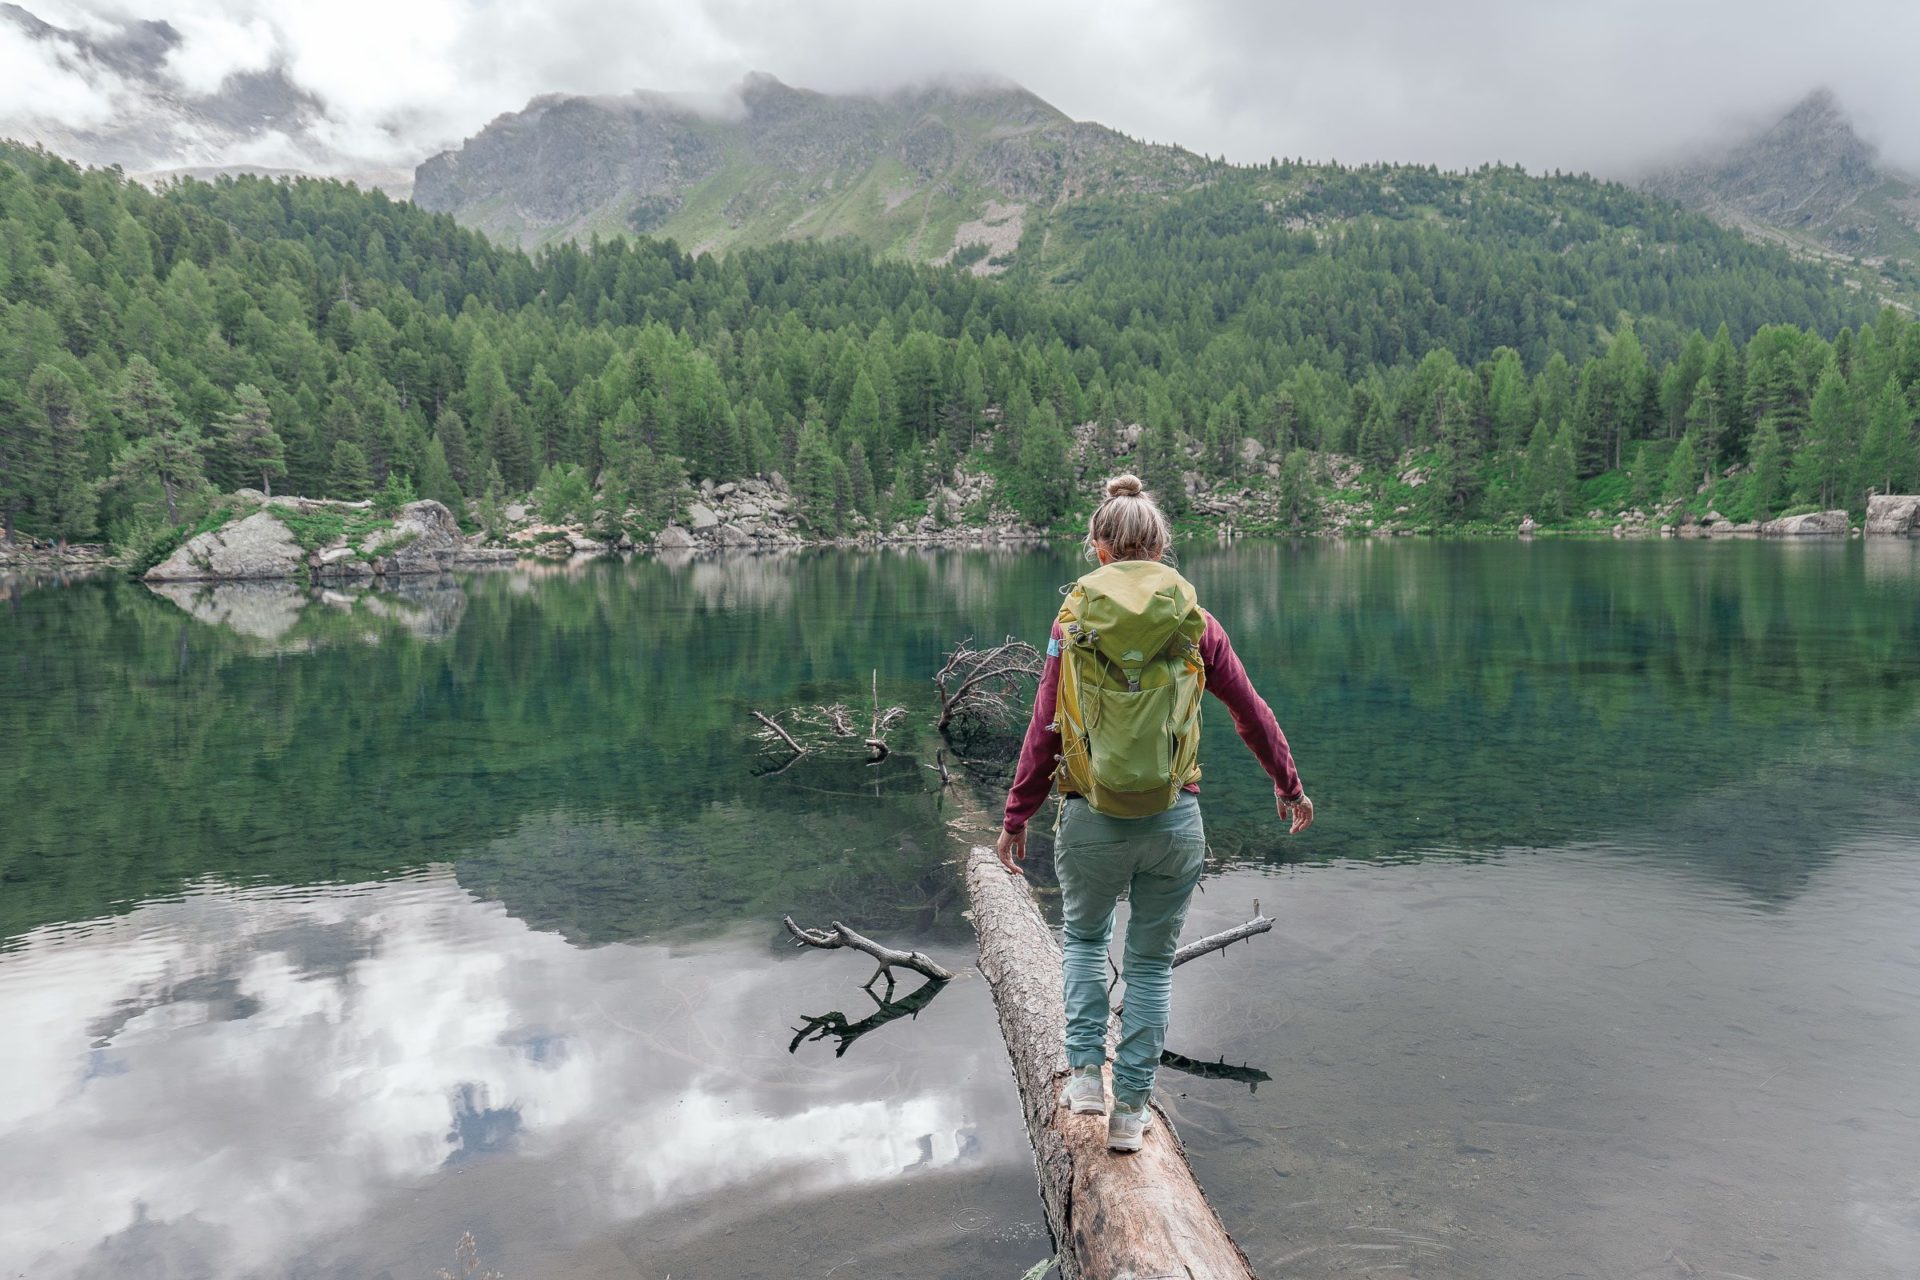 Eine Frau mit Rucksack überquert einen See auf einem Baumstamm.